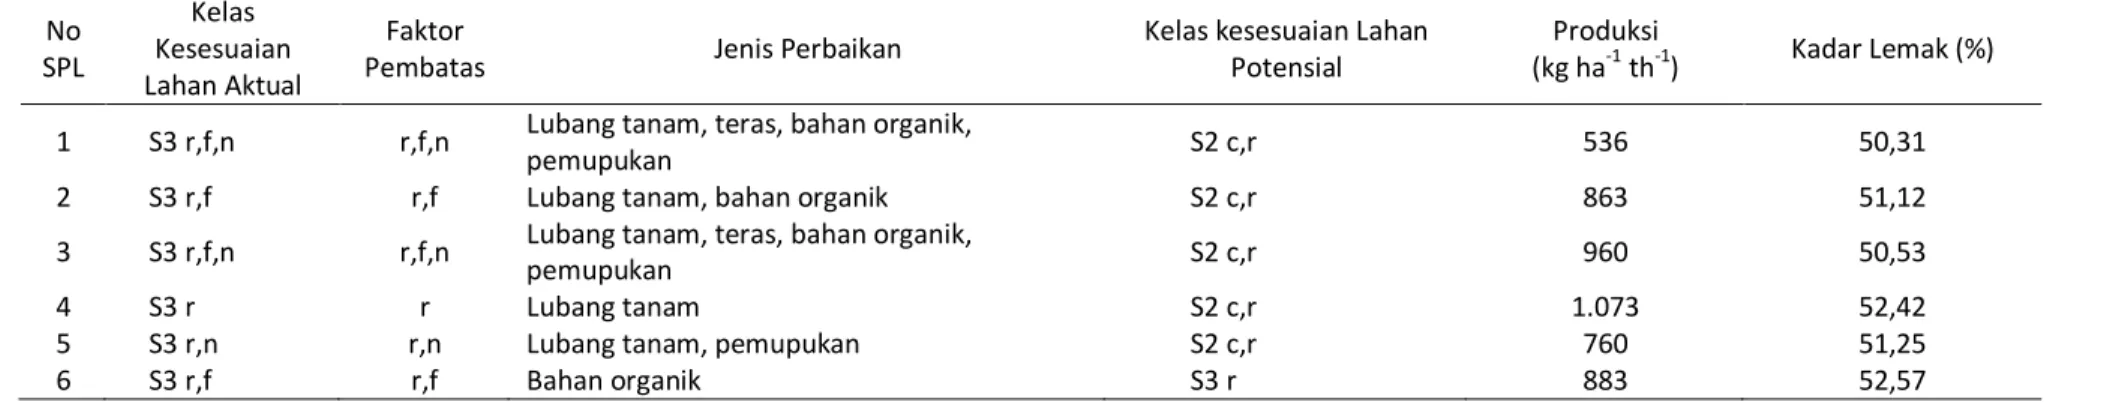 Tabel 8. Hasil klasifikasi kesesuaian lahan aktual dan potensial Klaster Tangse  No  SPL  Kelas  Kesesuaian  Lahan Aktual  Faktor 